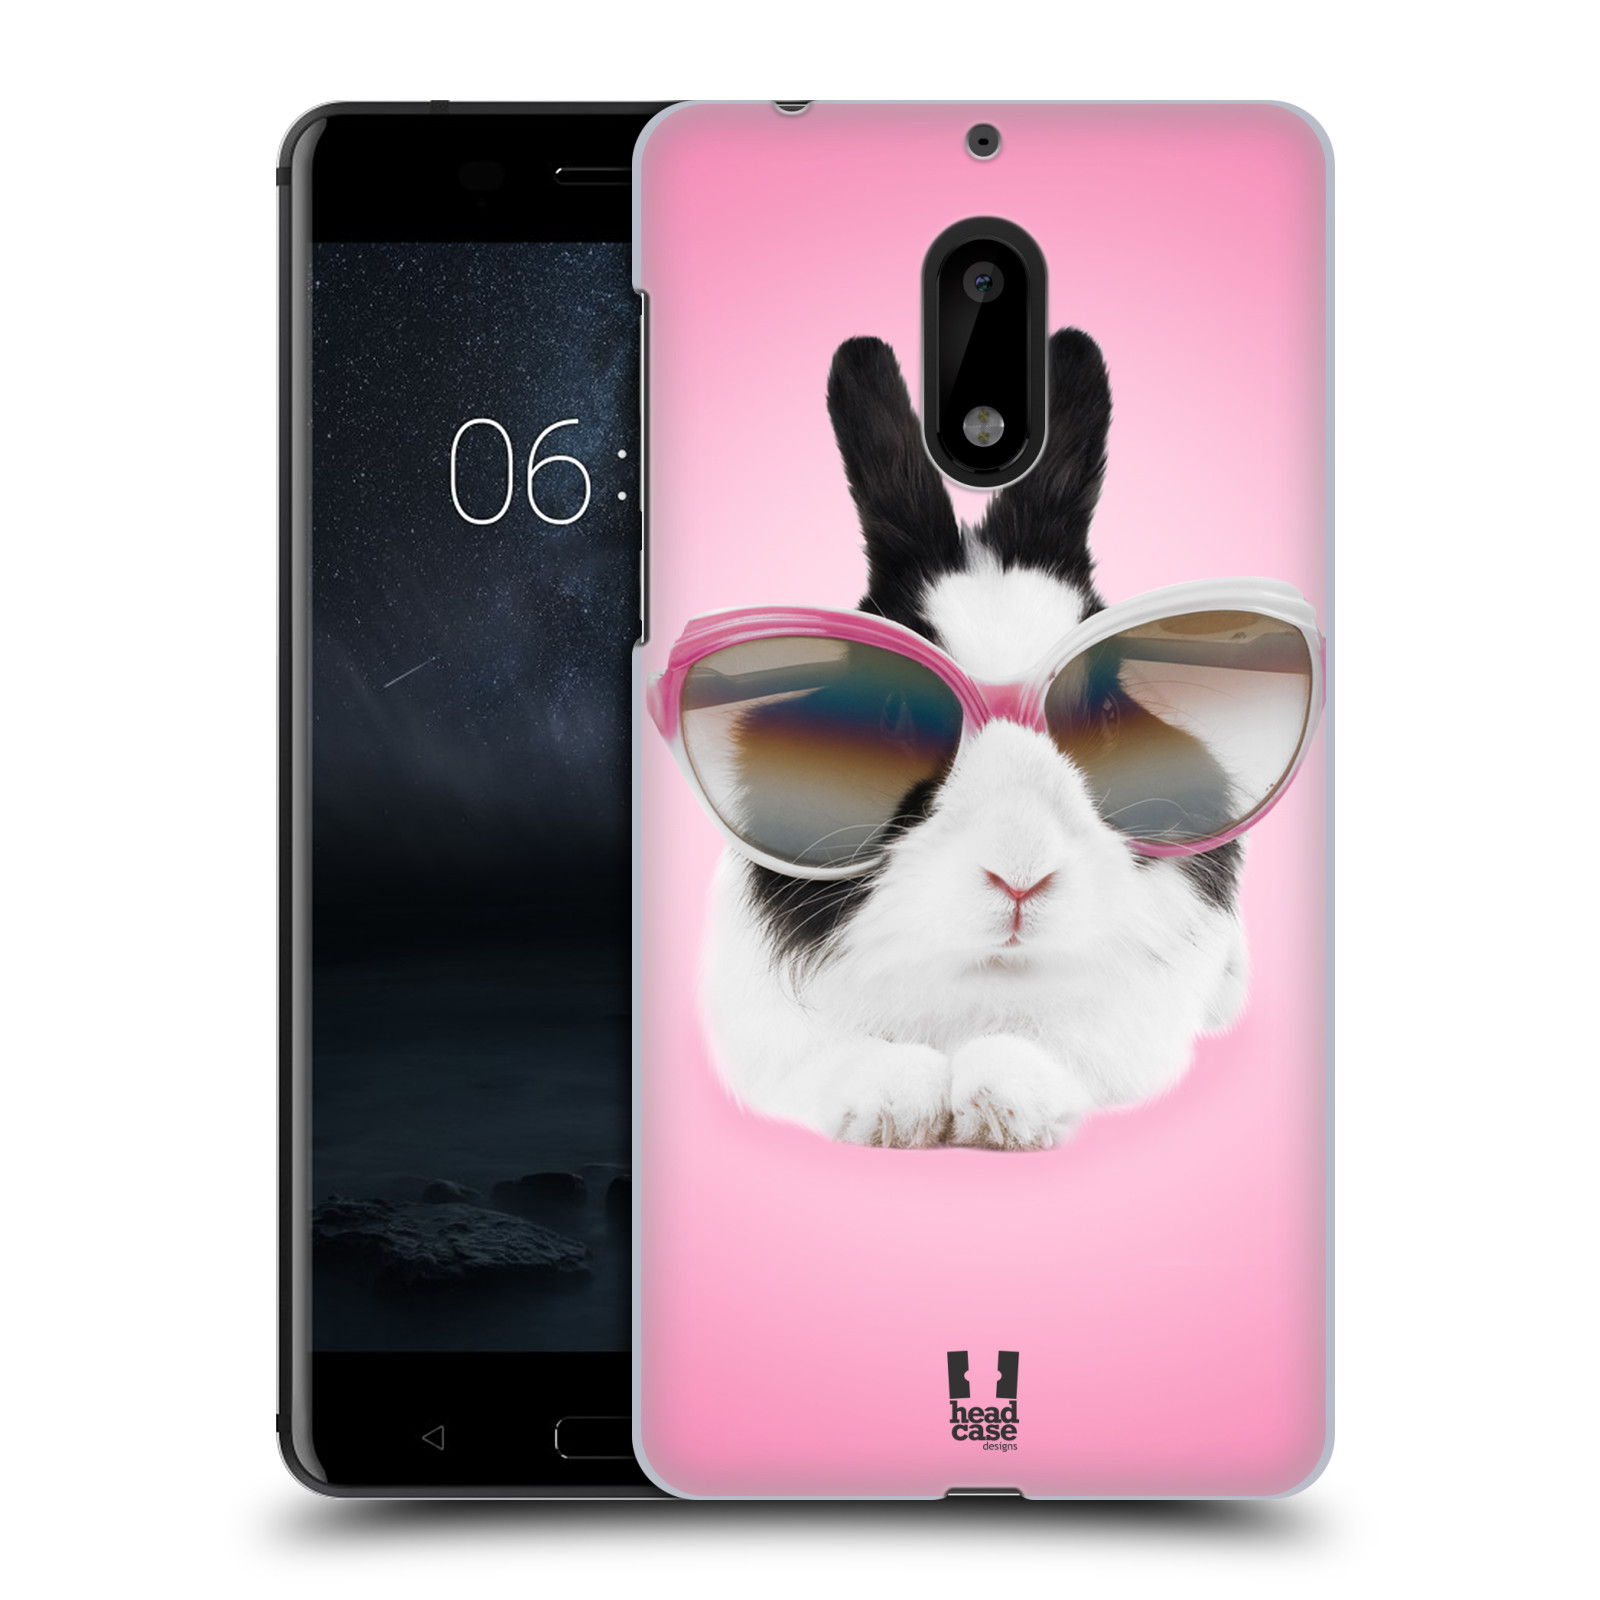 HEAD CASE plastový obal na mobil Nokia 6 vzor Legrační zvířátka roztomilý králíček s brýlemi růžová